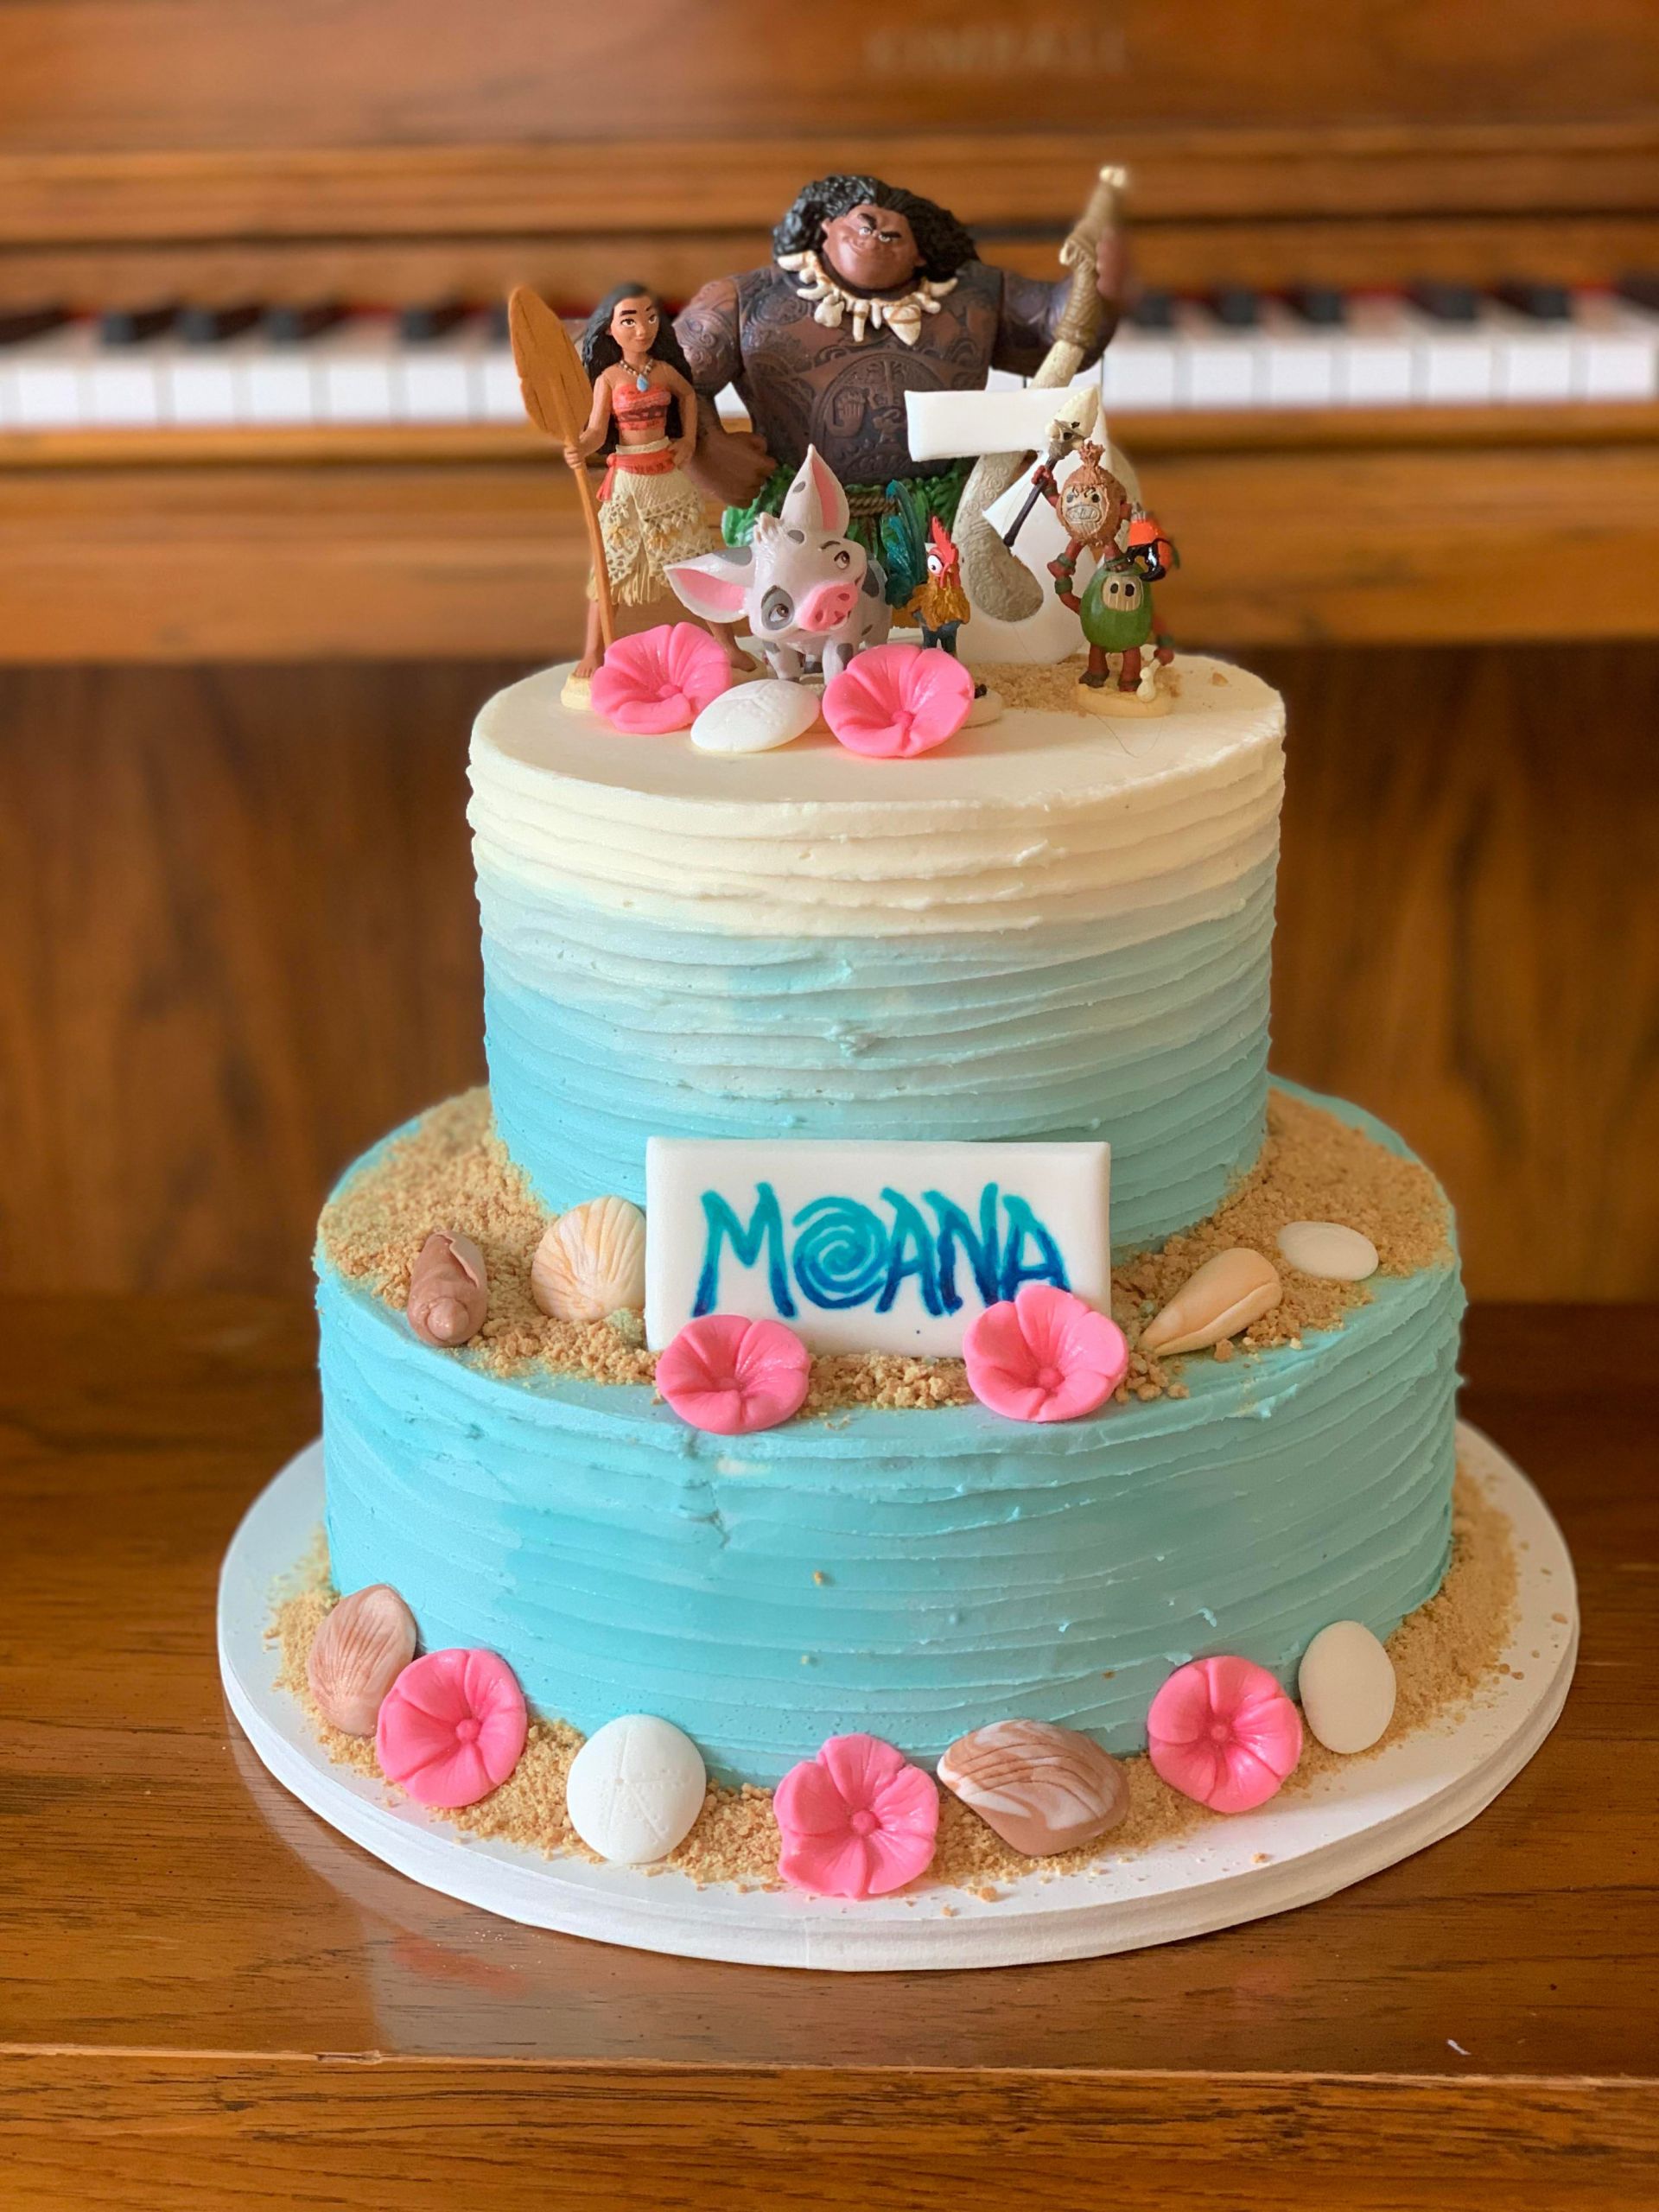 Moana Birthday Cake Awesome Moana Birthday Cake I’m Still Obsessing Over My Hand